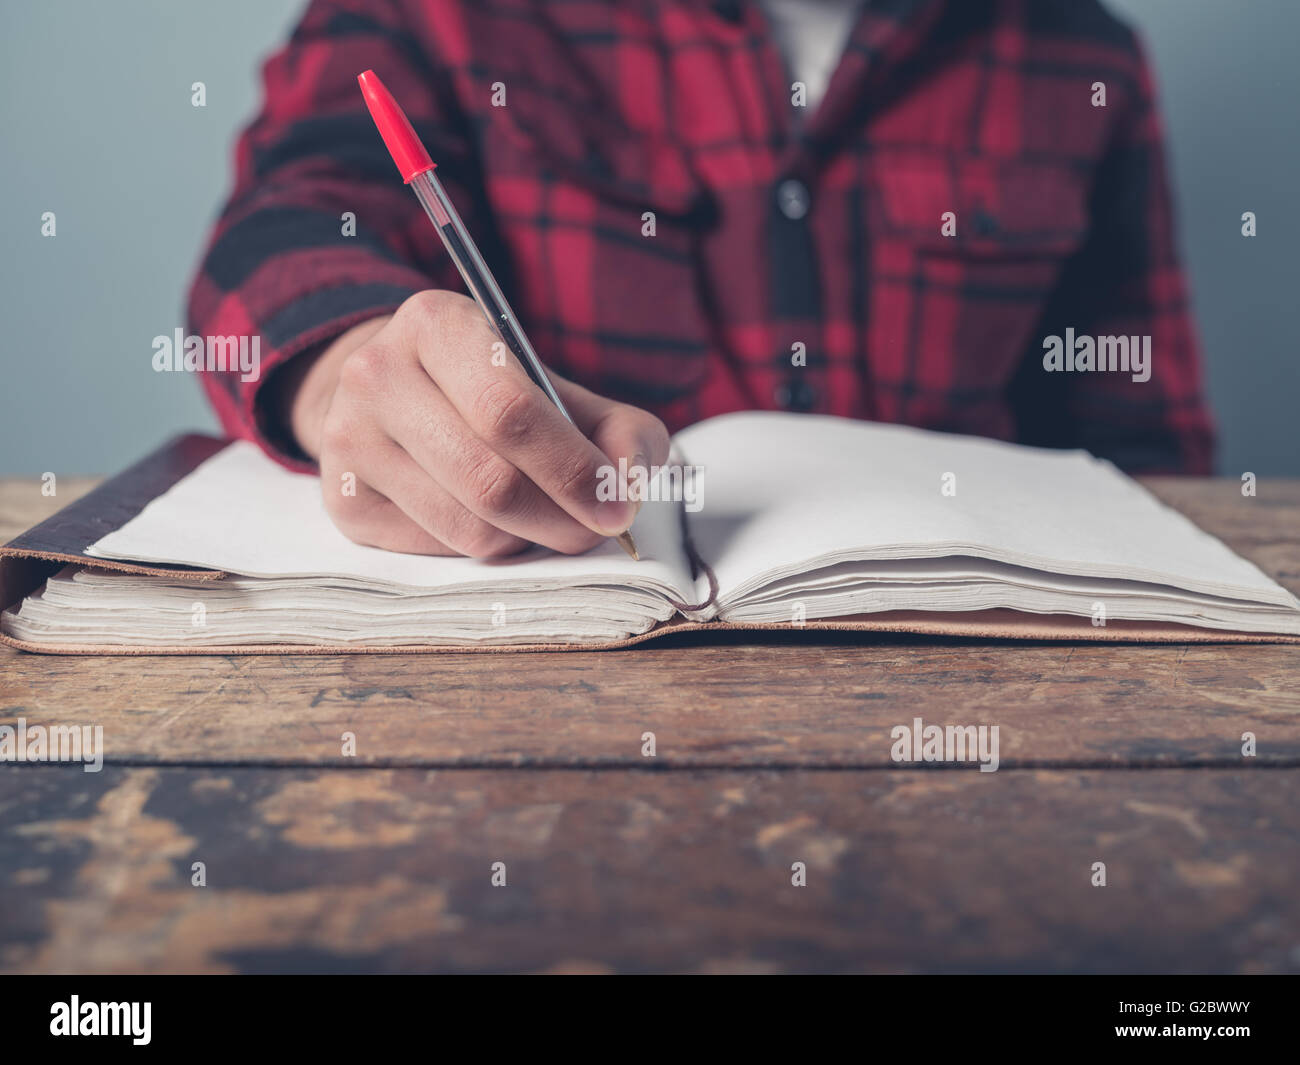 Ein junger Mann mit einer karierten Jacke ist an einem Schreibtisch Notizen. Stockfoto